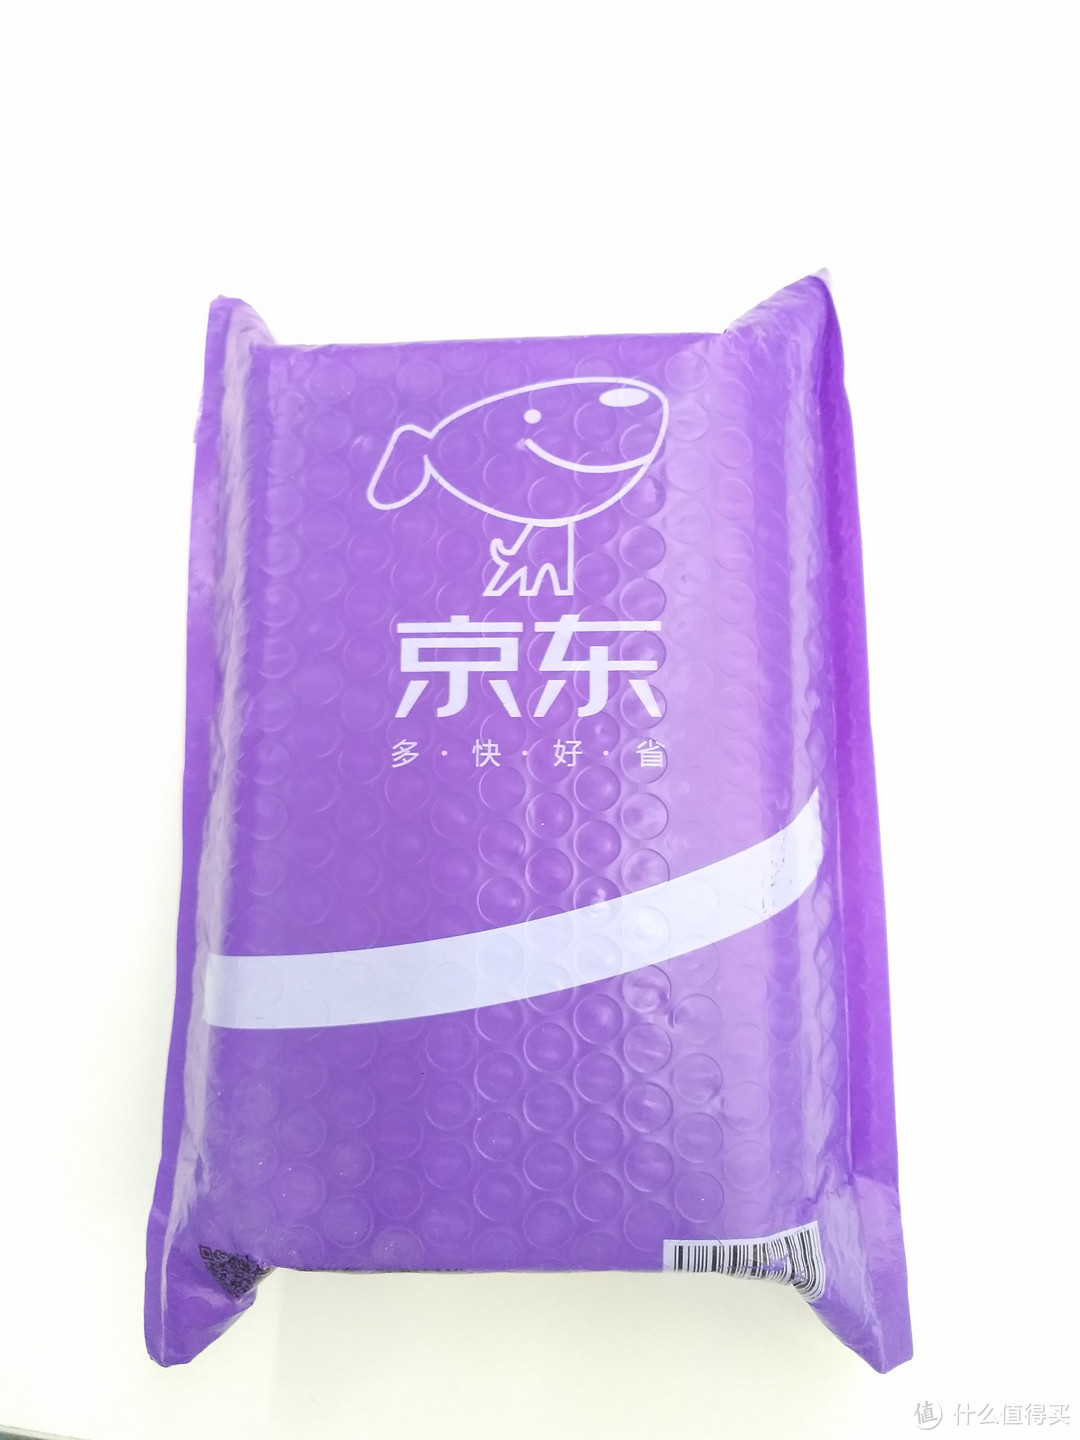 紫色的京东袋子，这次K20主题色是紫色，猜测可能是特别定制的京东包装袋，感受到了这个小心思。